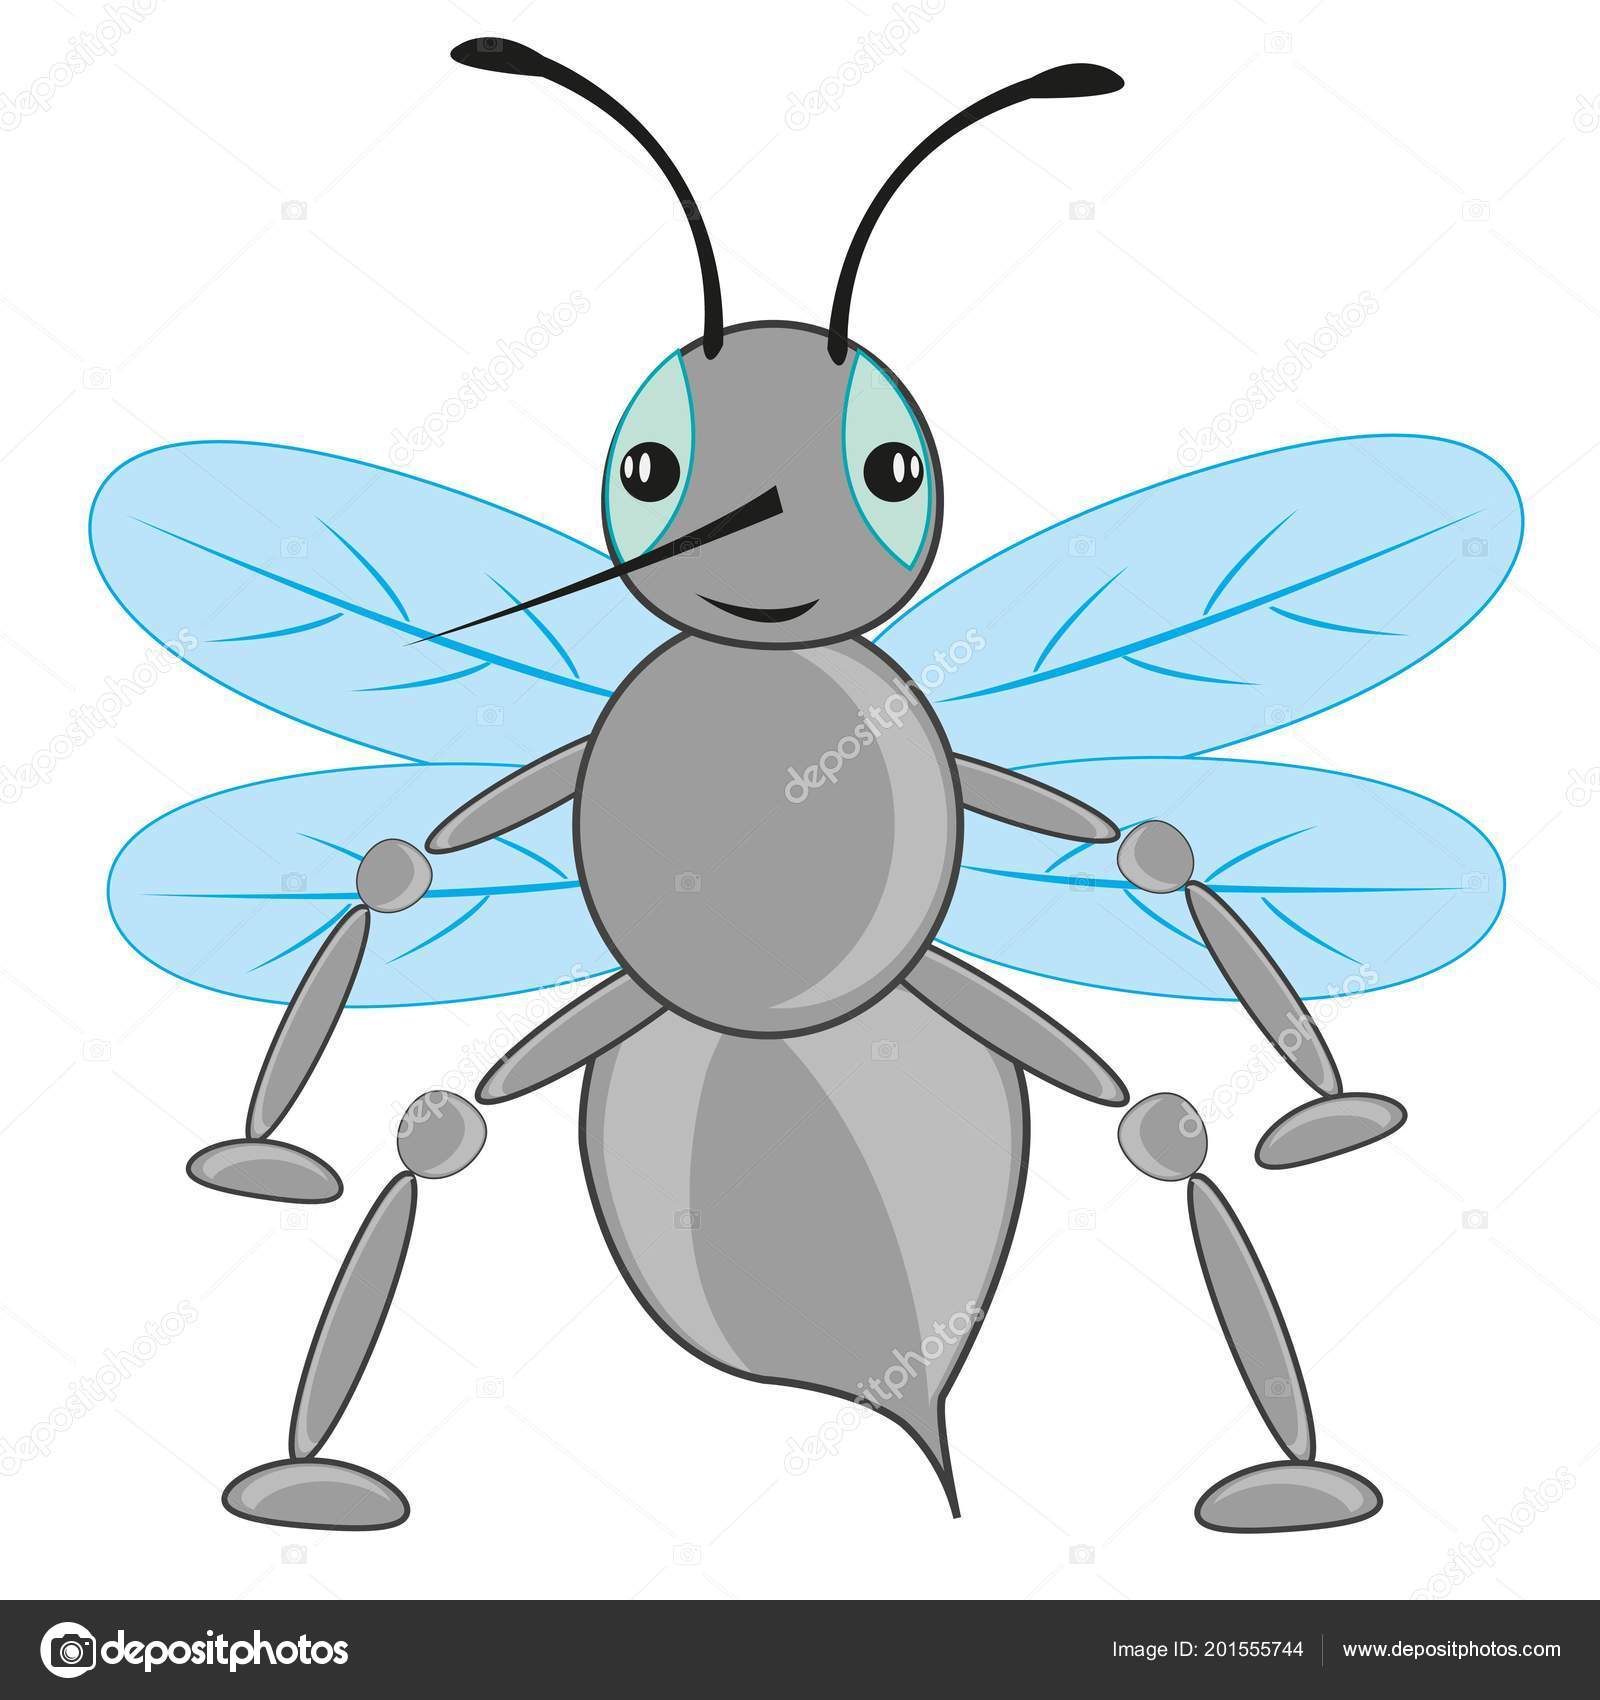 Mosca insecto dibujos animados Vector de stock  cobol1964 201555744